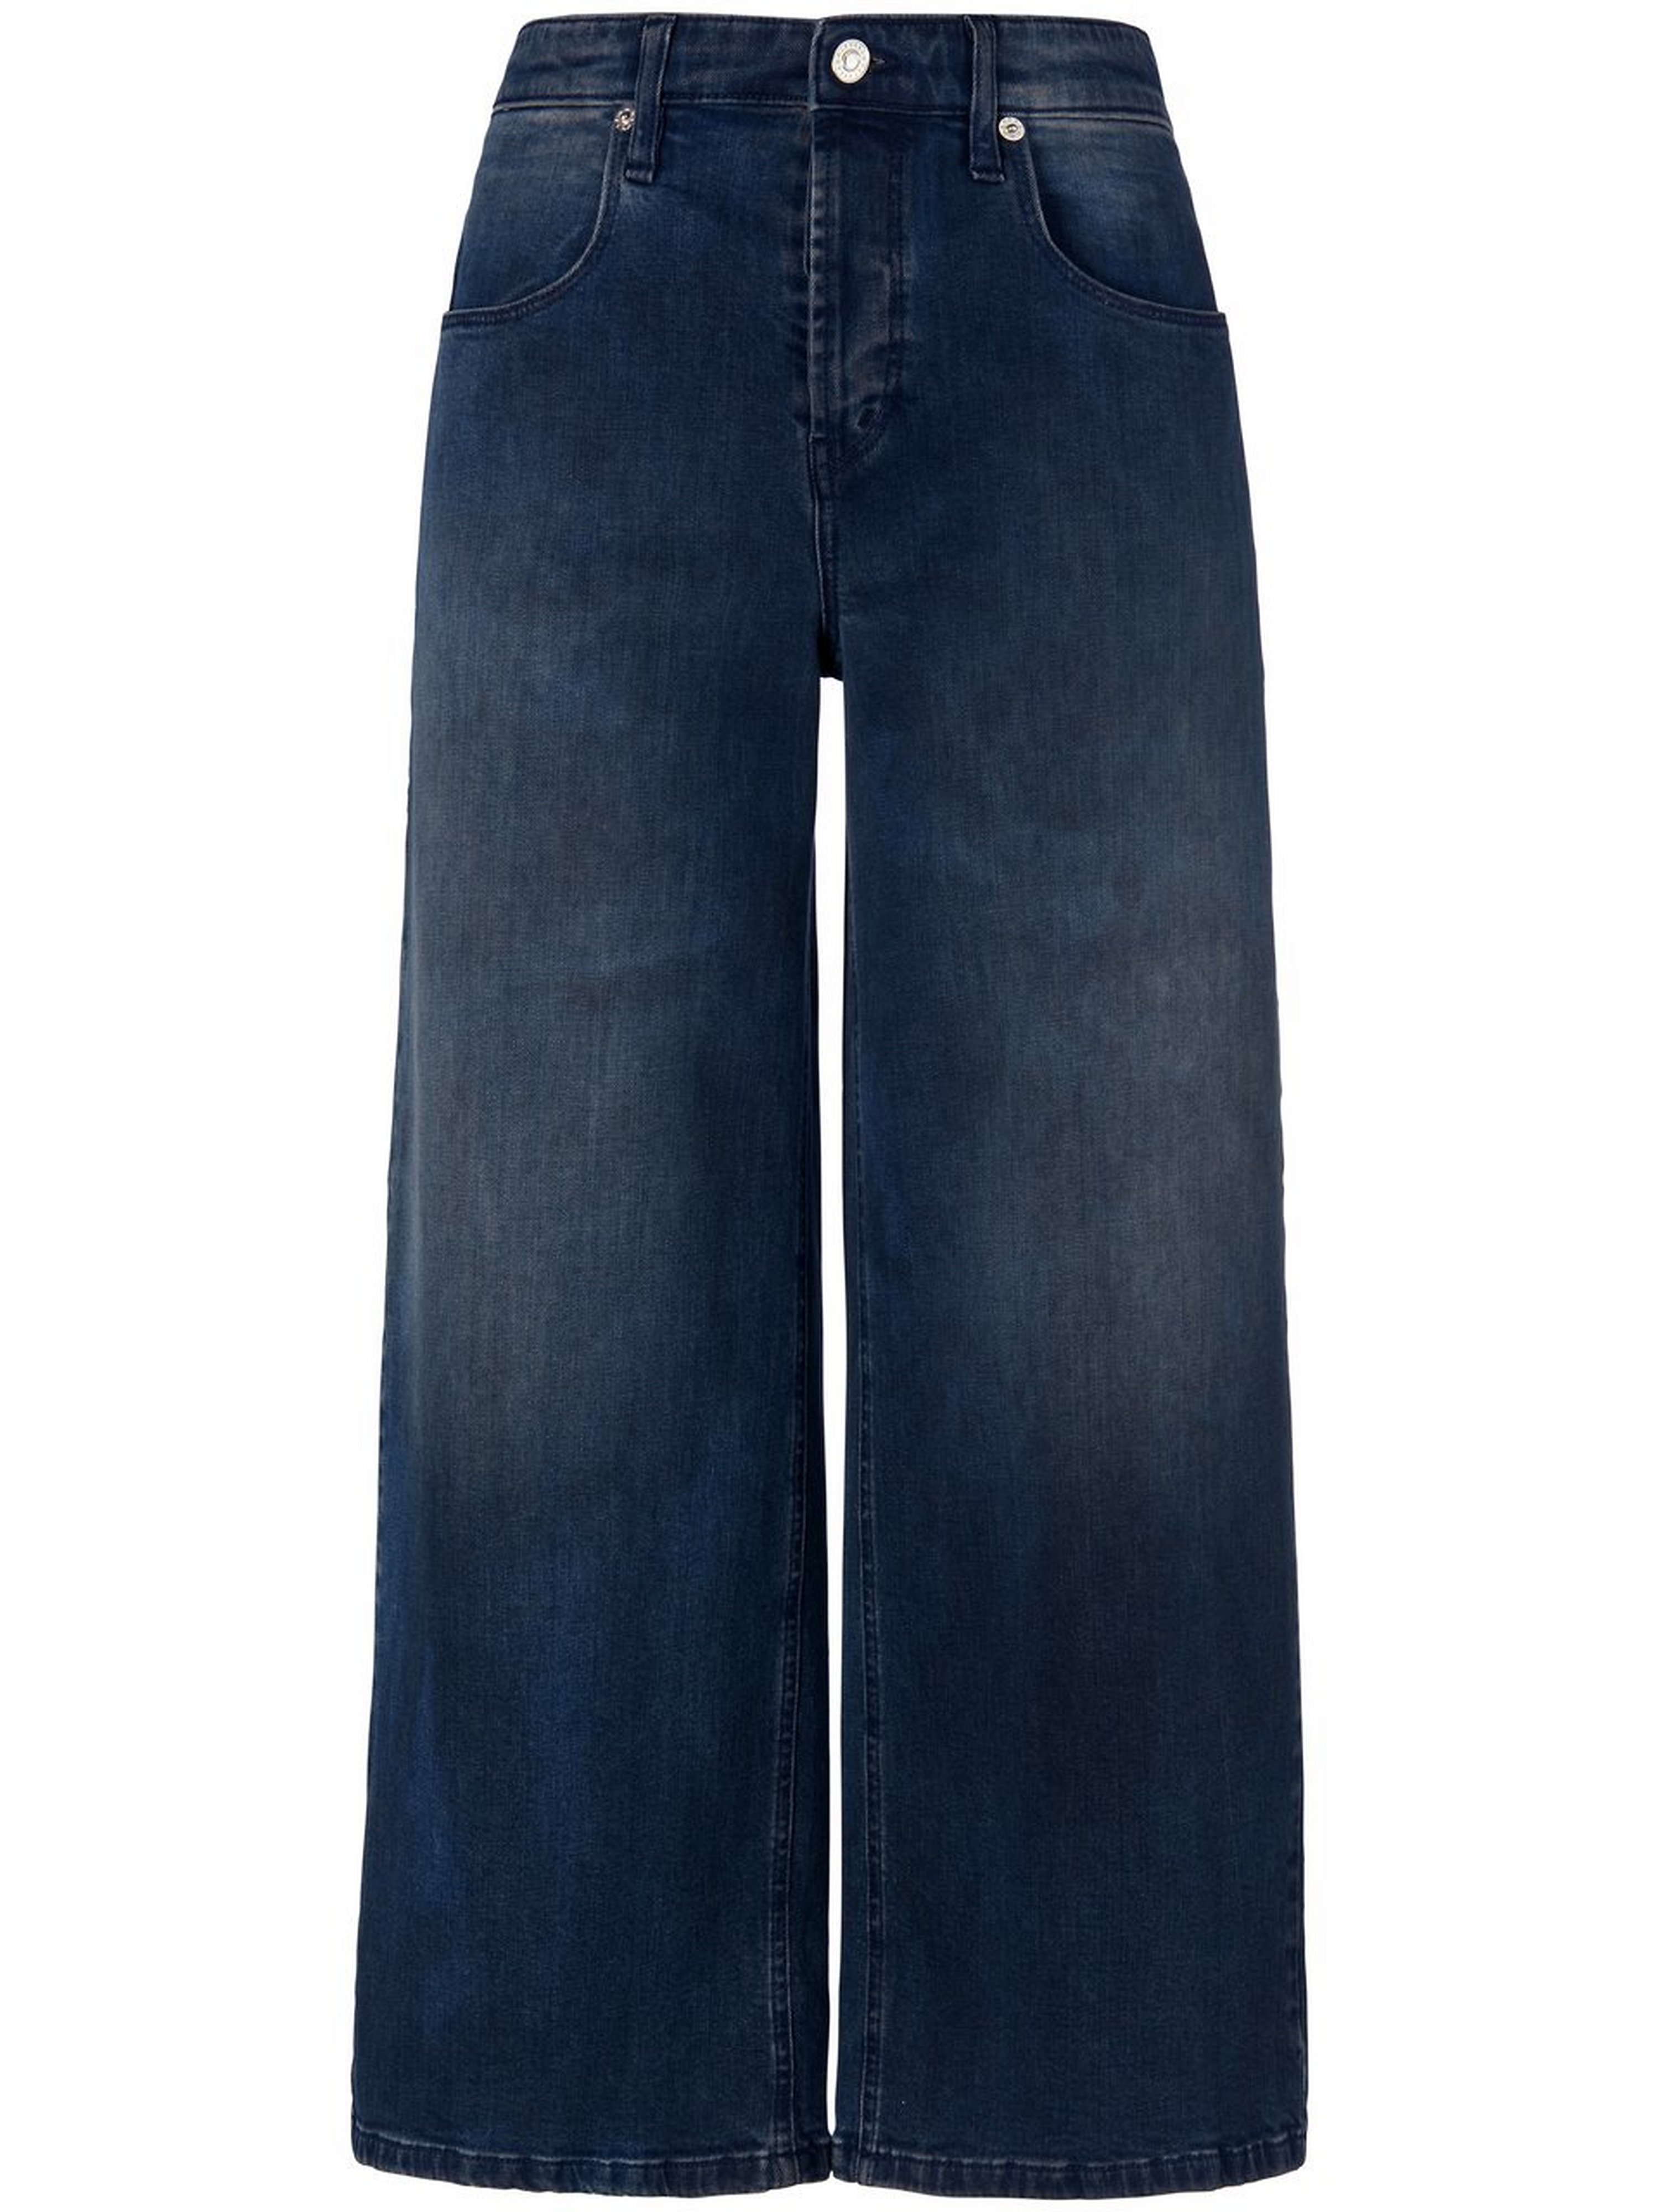 La jupe-culotte jean  Windsor denim taille 30